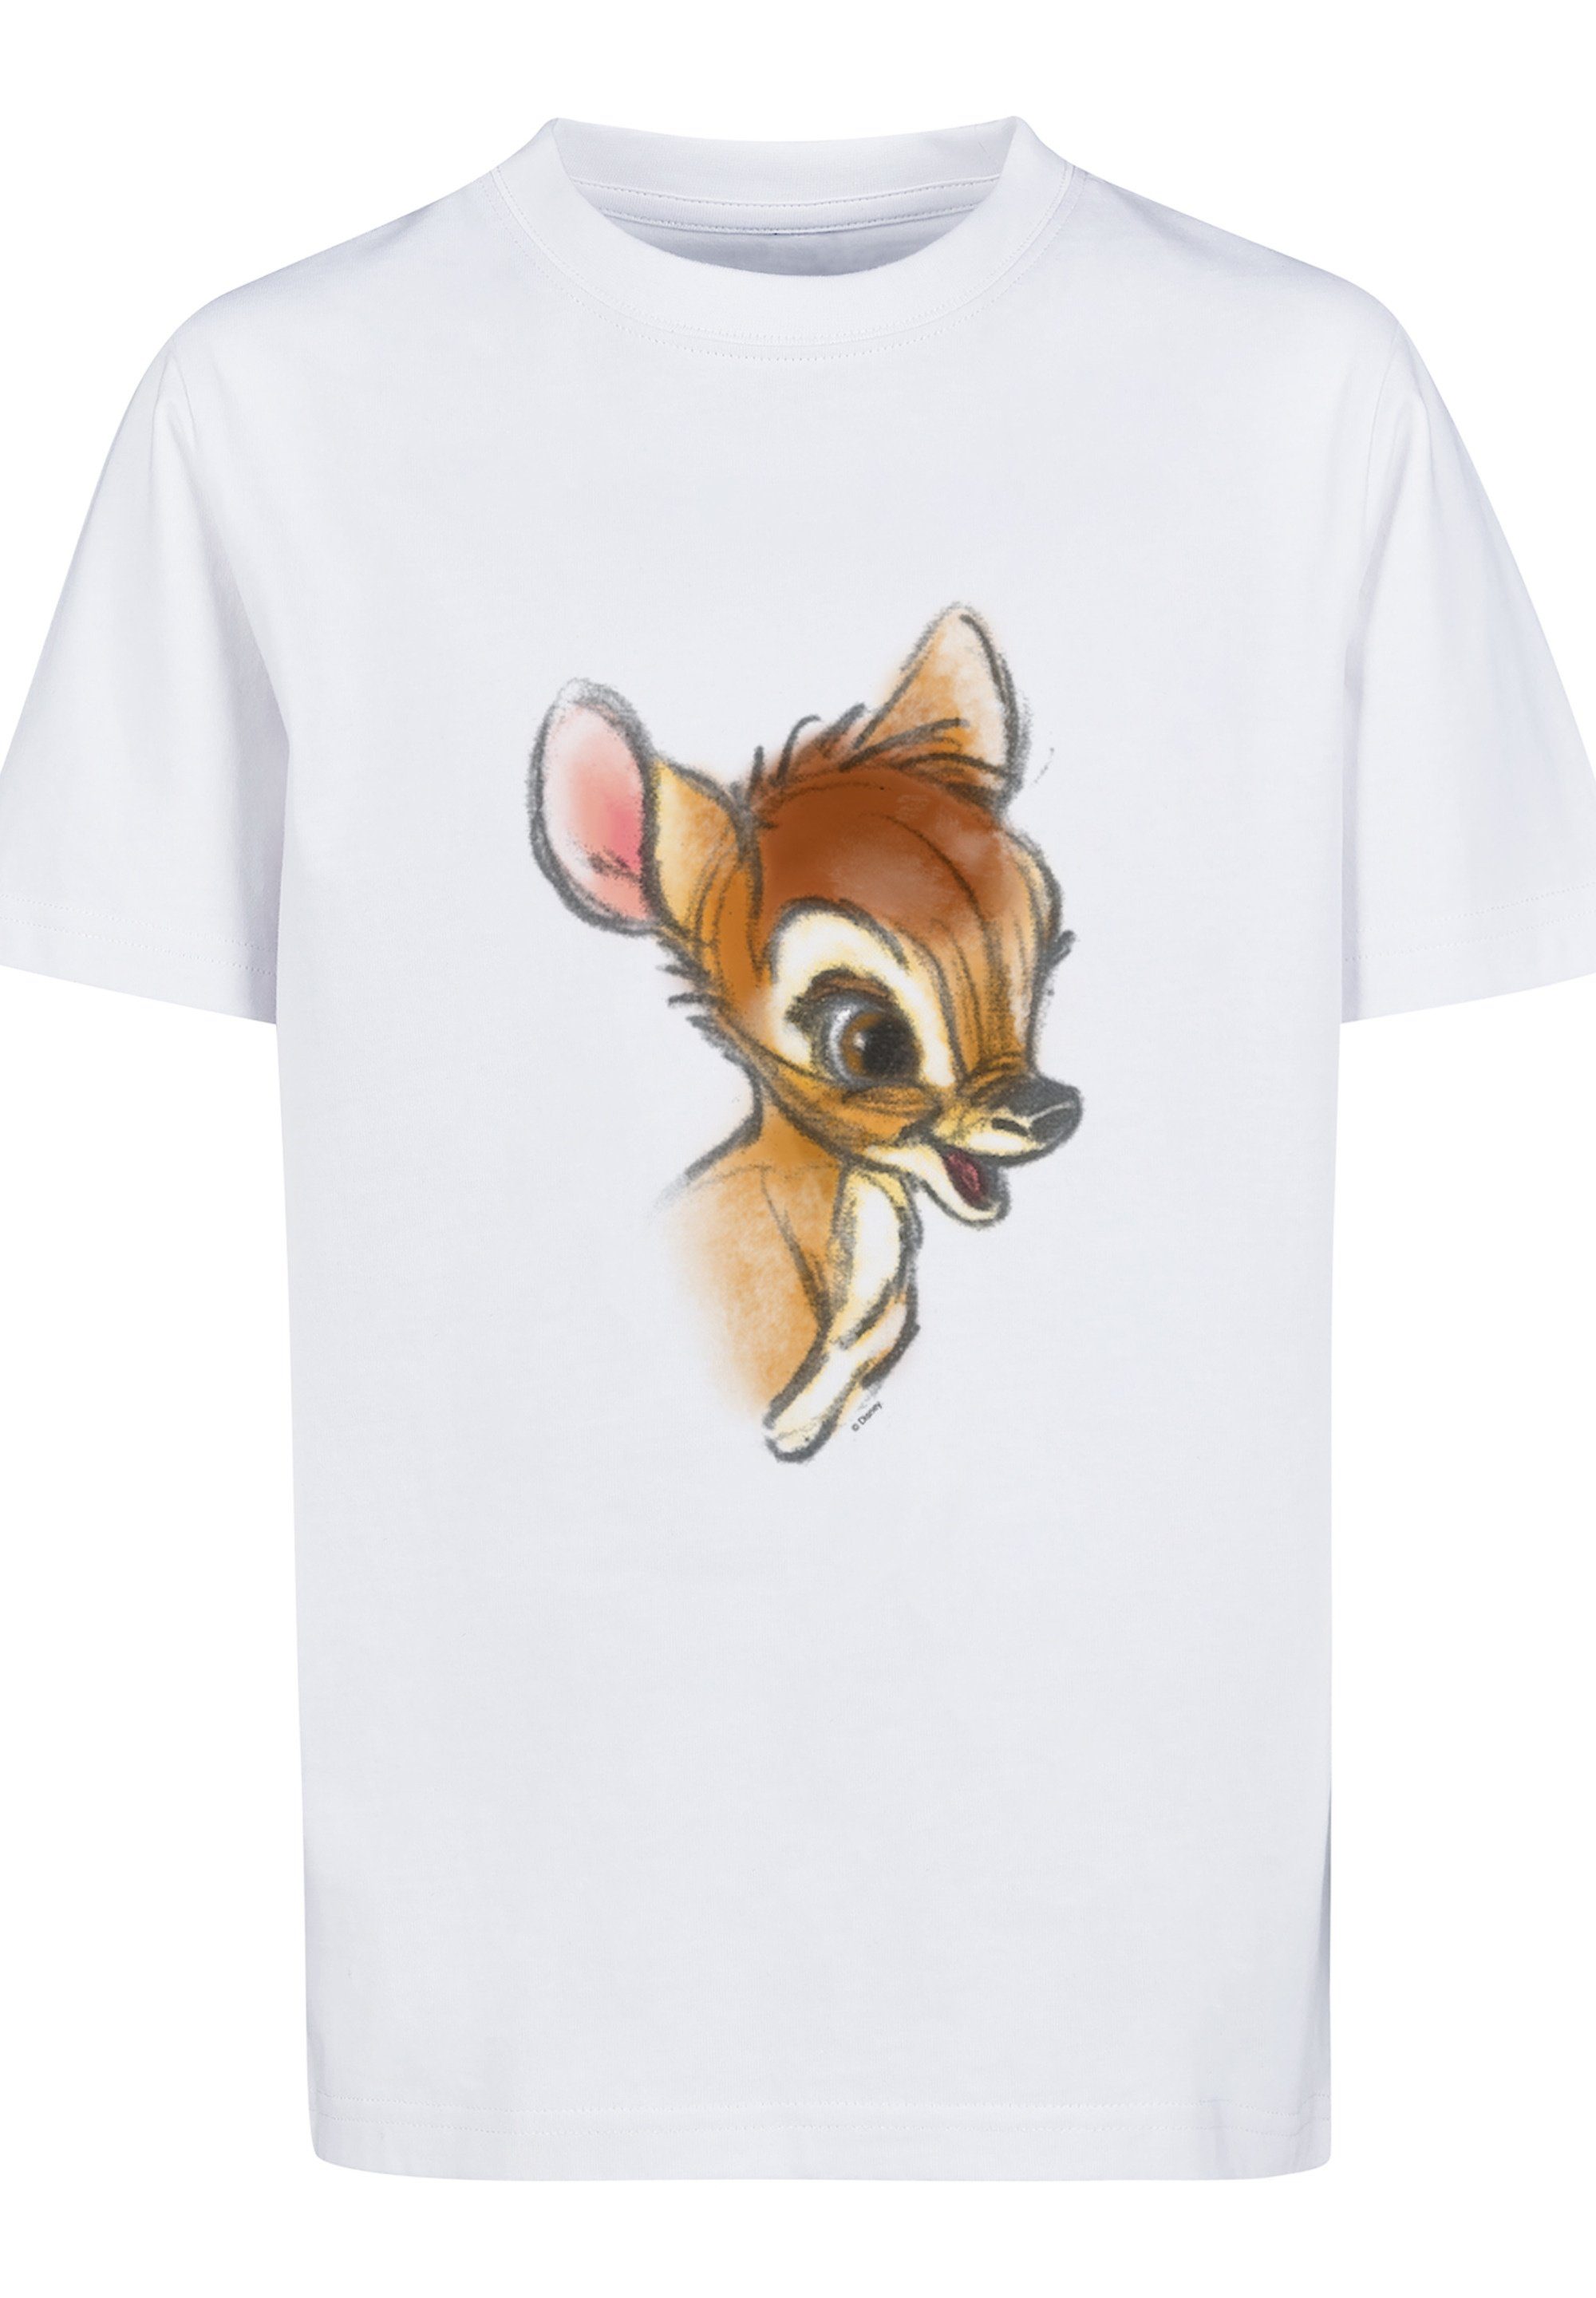 F4NT4STIC T-Shirt Disney Kinder,Premium Zeichnung Merch,Jungen, Bambi Unisex Mädchen,Bedruckt